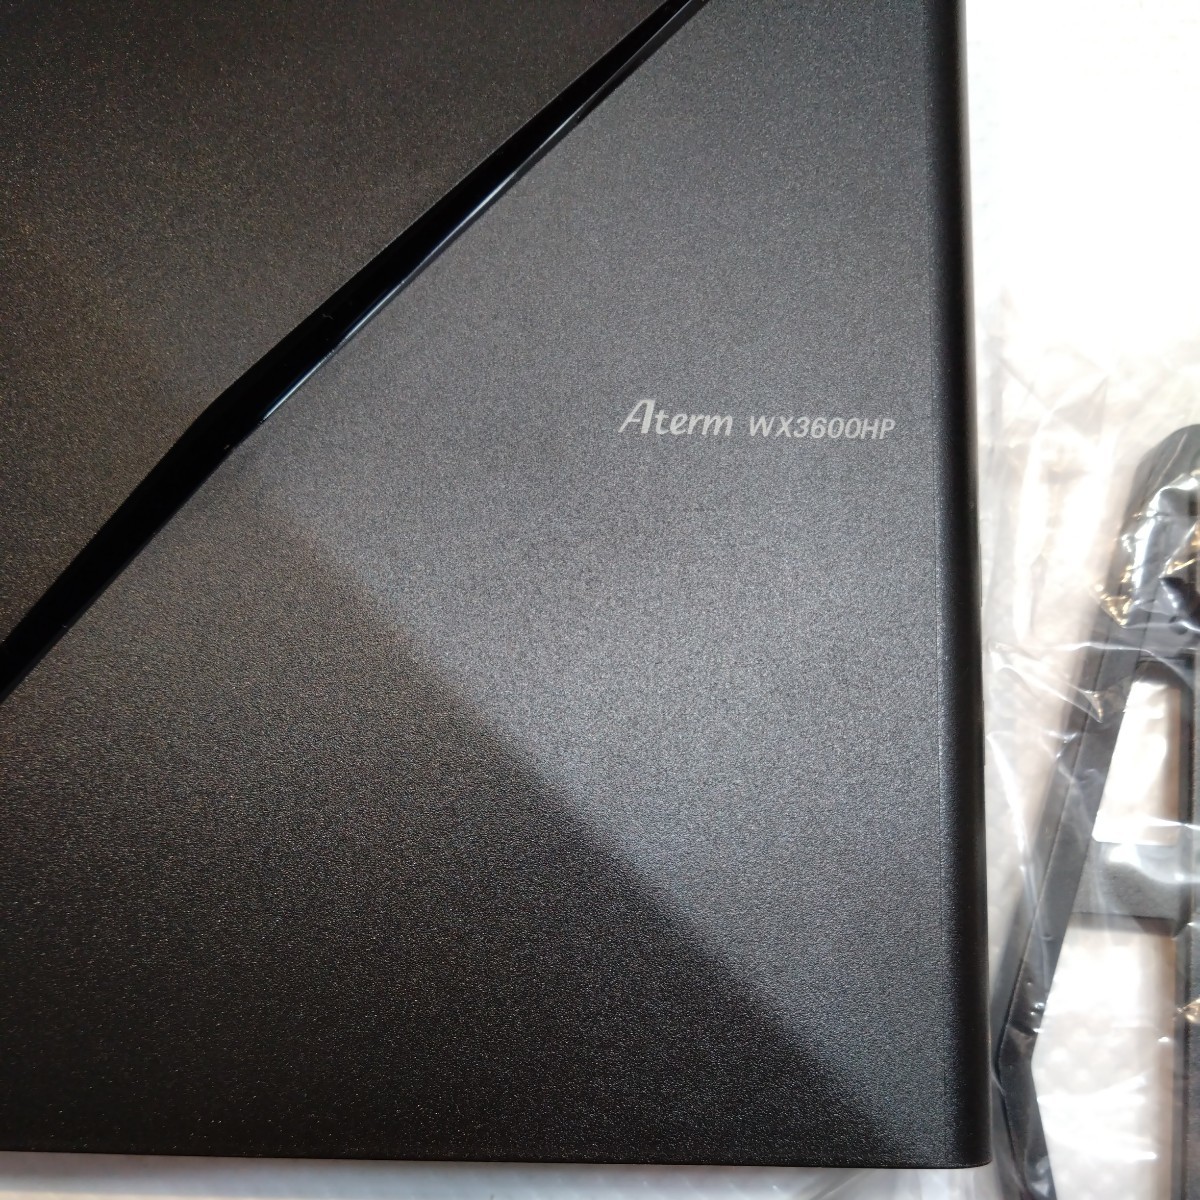 【新品】NEC AM-WX3600HP 無線LANルータ Aterm ブラック　no.592_画像6